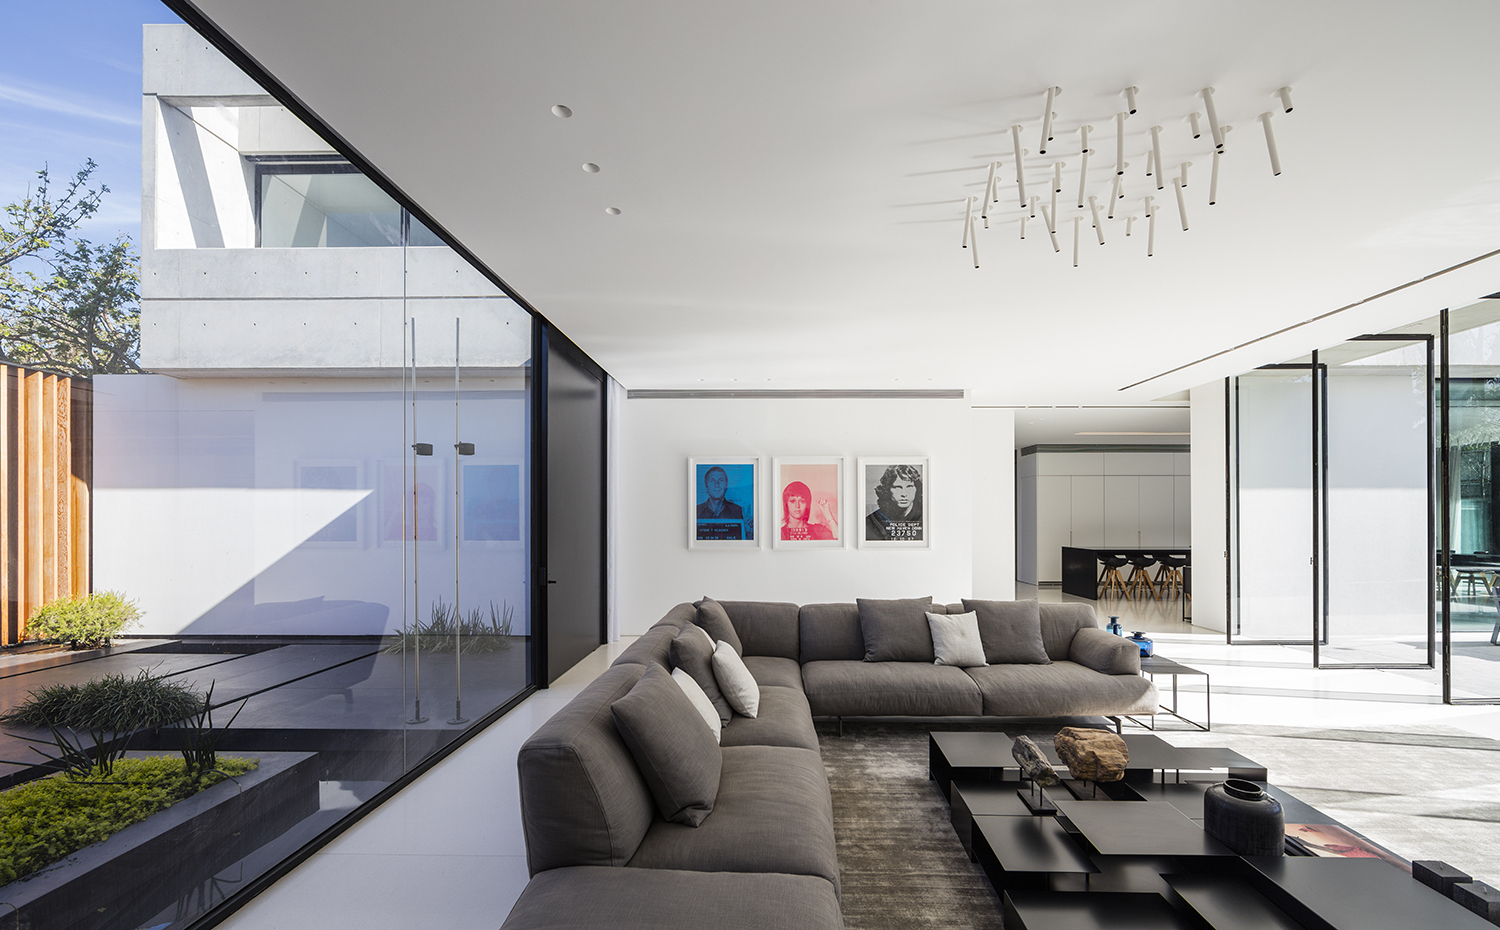 SHABAT HOUSE 036. Mobiliario de estilo contemporáneo en sintonía con la arquitectura de la vivienda